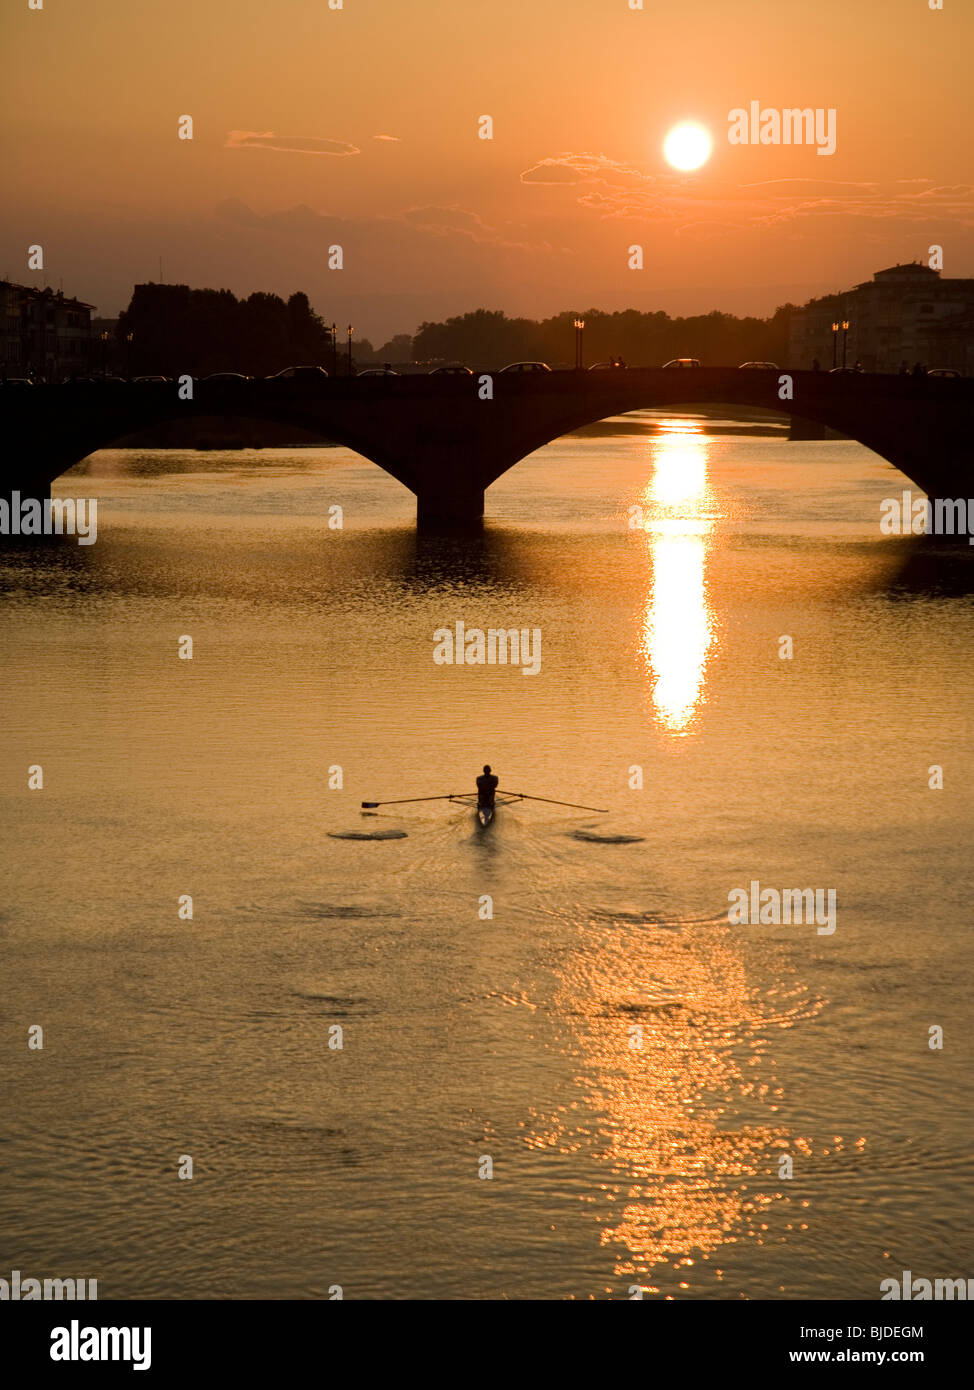 Hombre remando en un cuerpo de agua con un puente y una puesta de sol en el fondo. Foto de stock